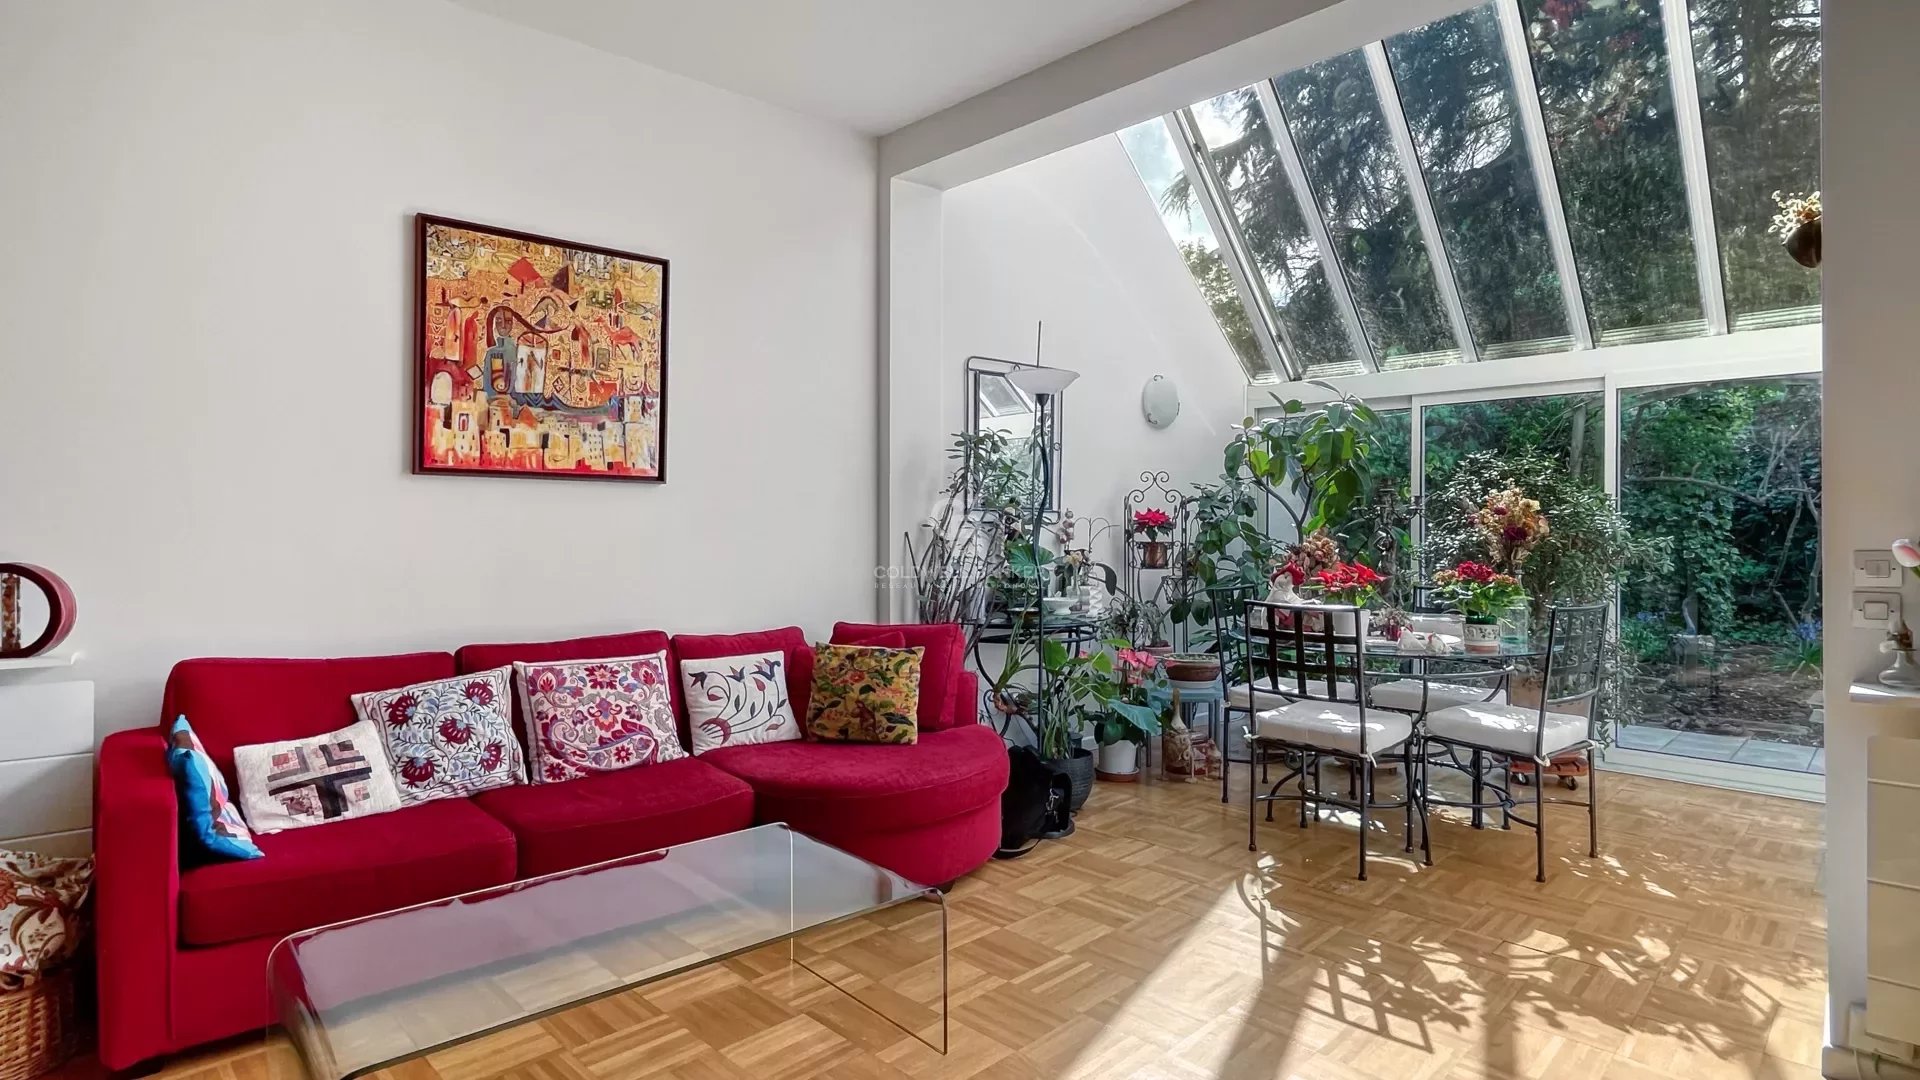 92150 Rueil-Malmaison Centre-Ville Maison à vendre 6 pièces 4 chambres avec jardin